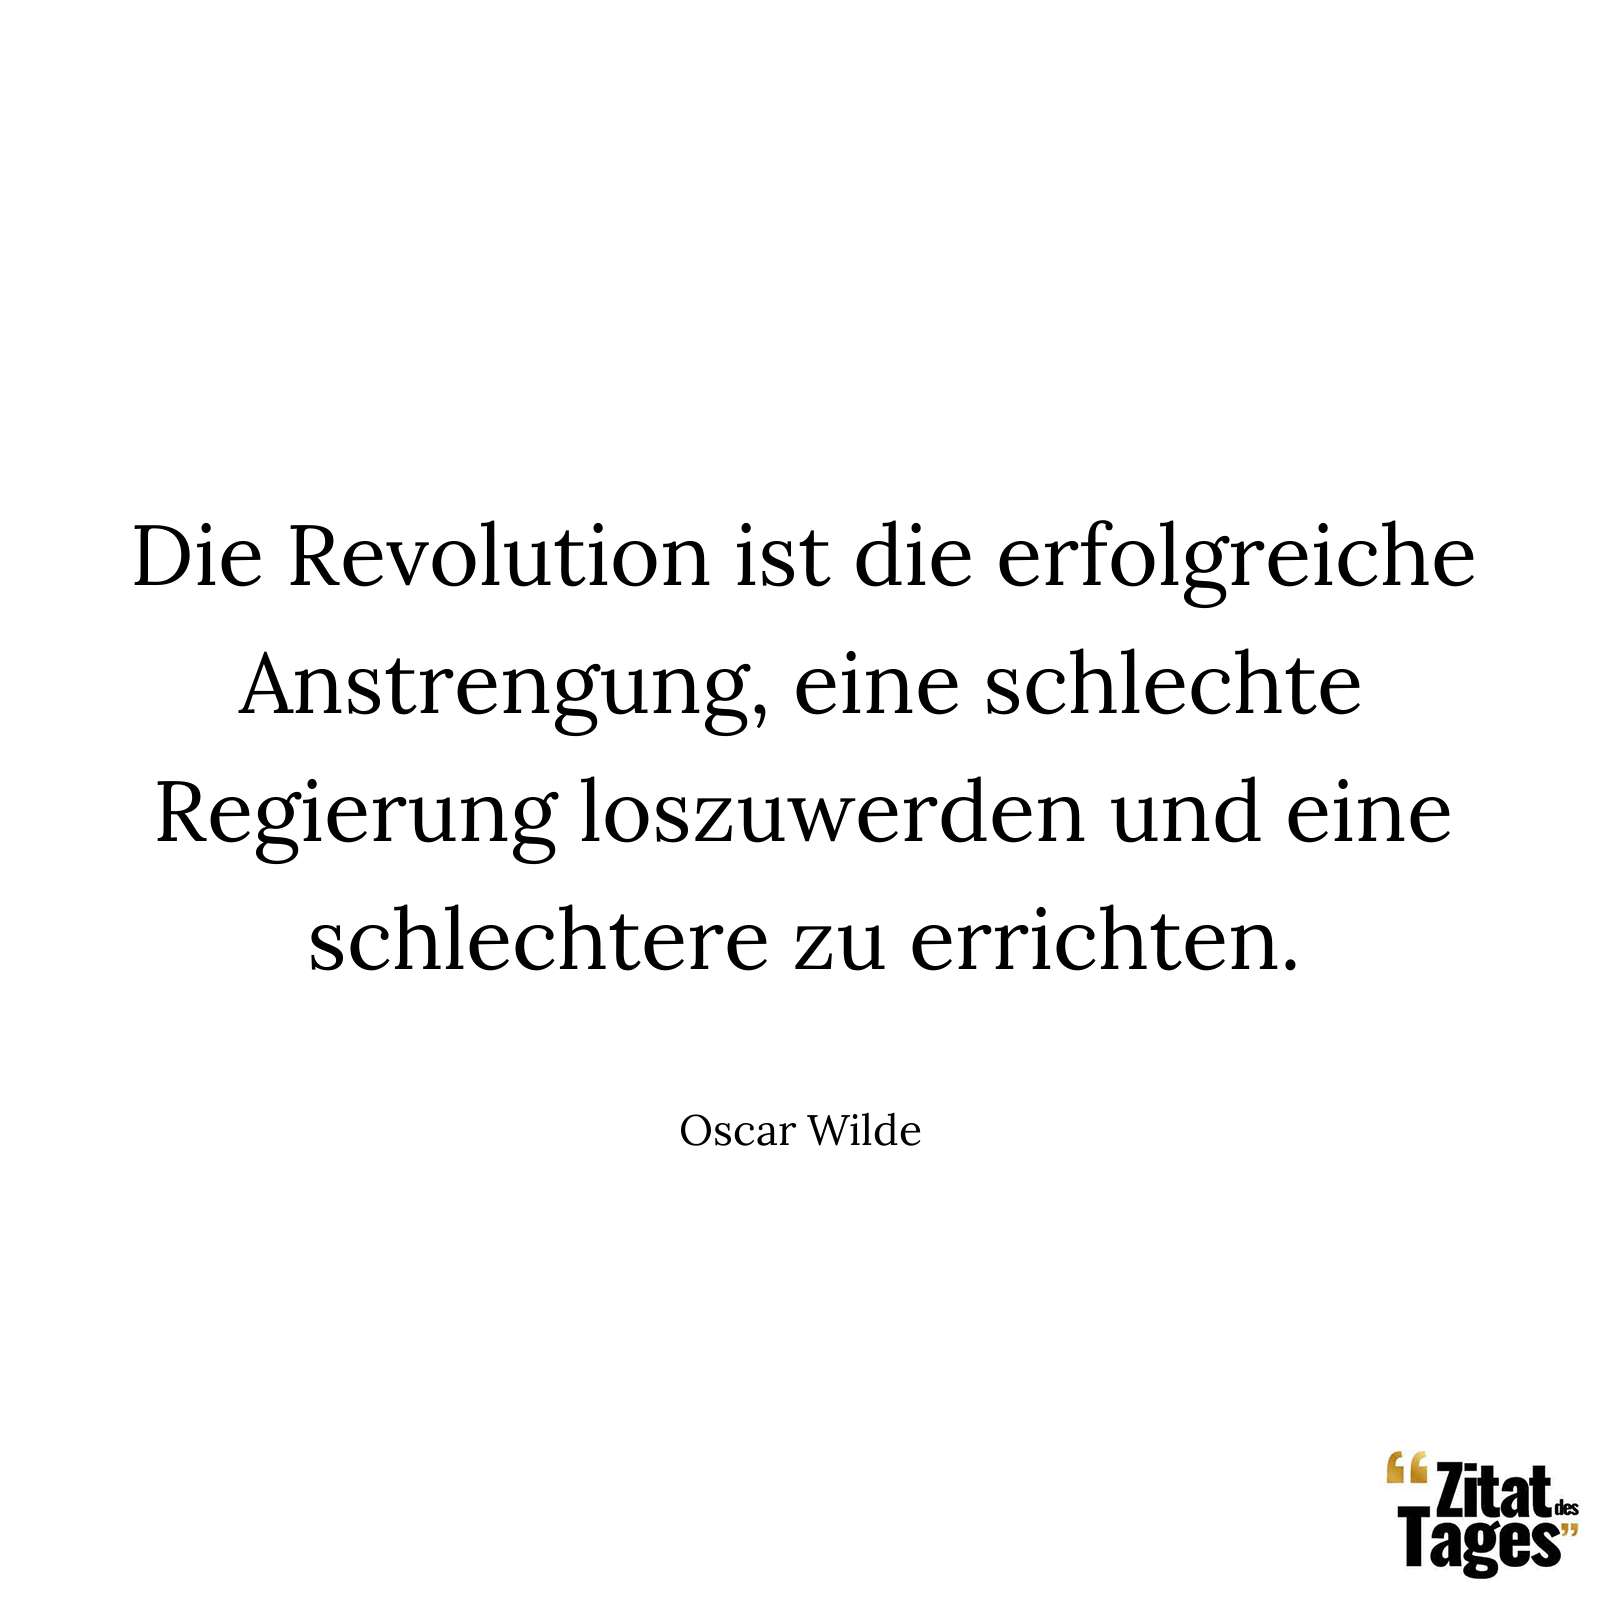 Die Revolution ist die erfolgreiche Anstrengung, eine schlechte Regierung loszuwerden und eine schlechtere zu errichten. - Oscar Wilde